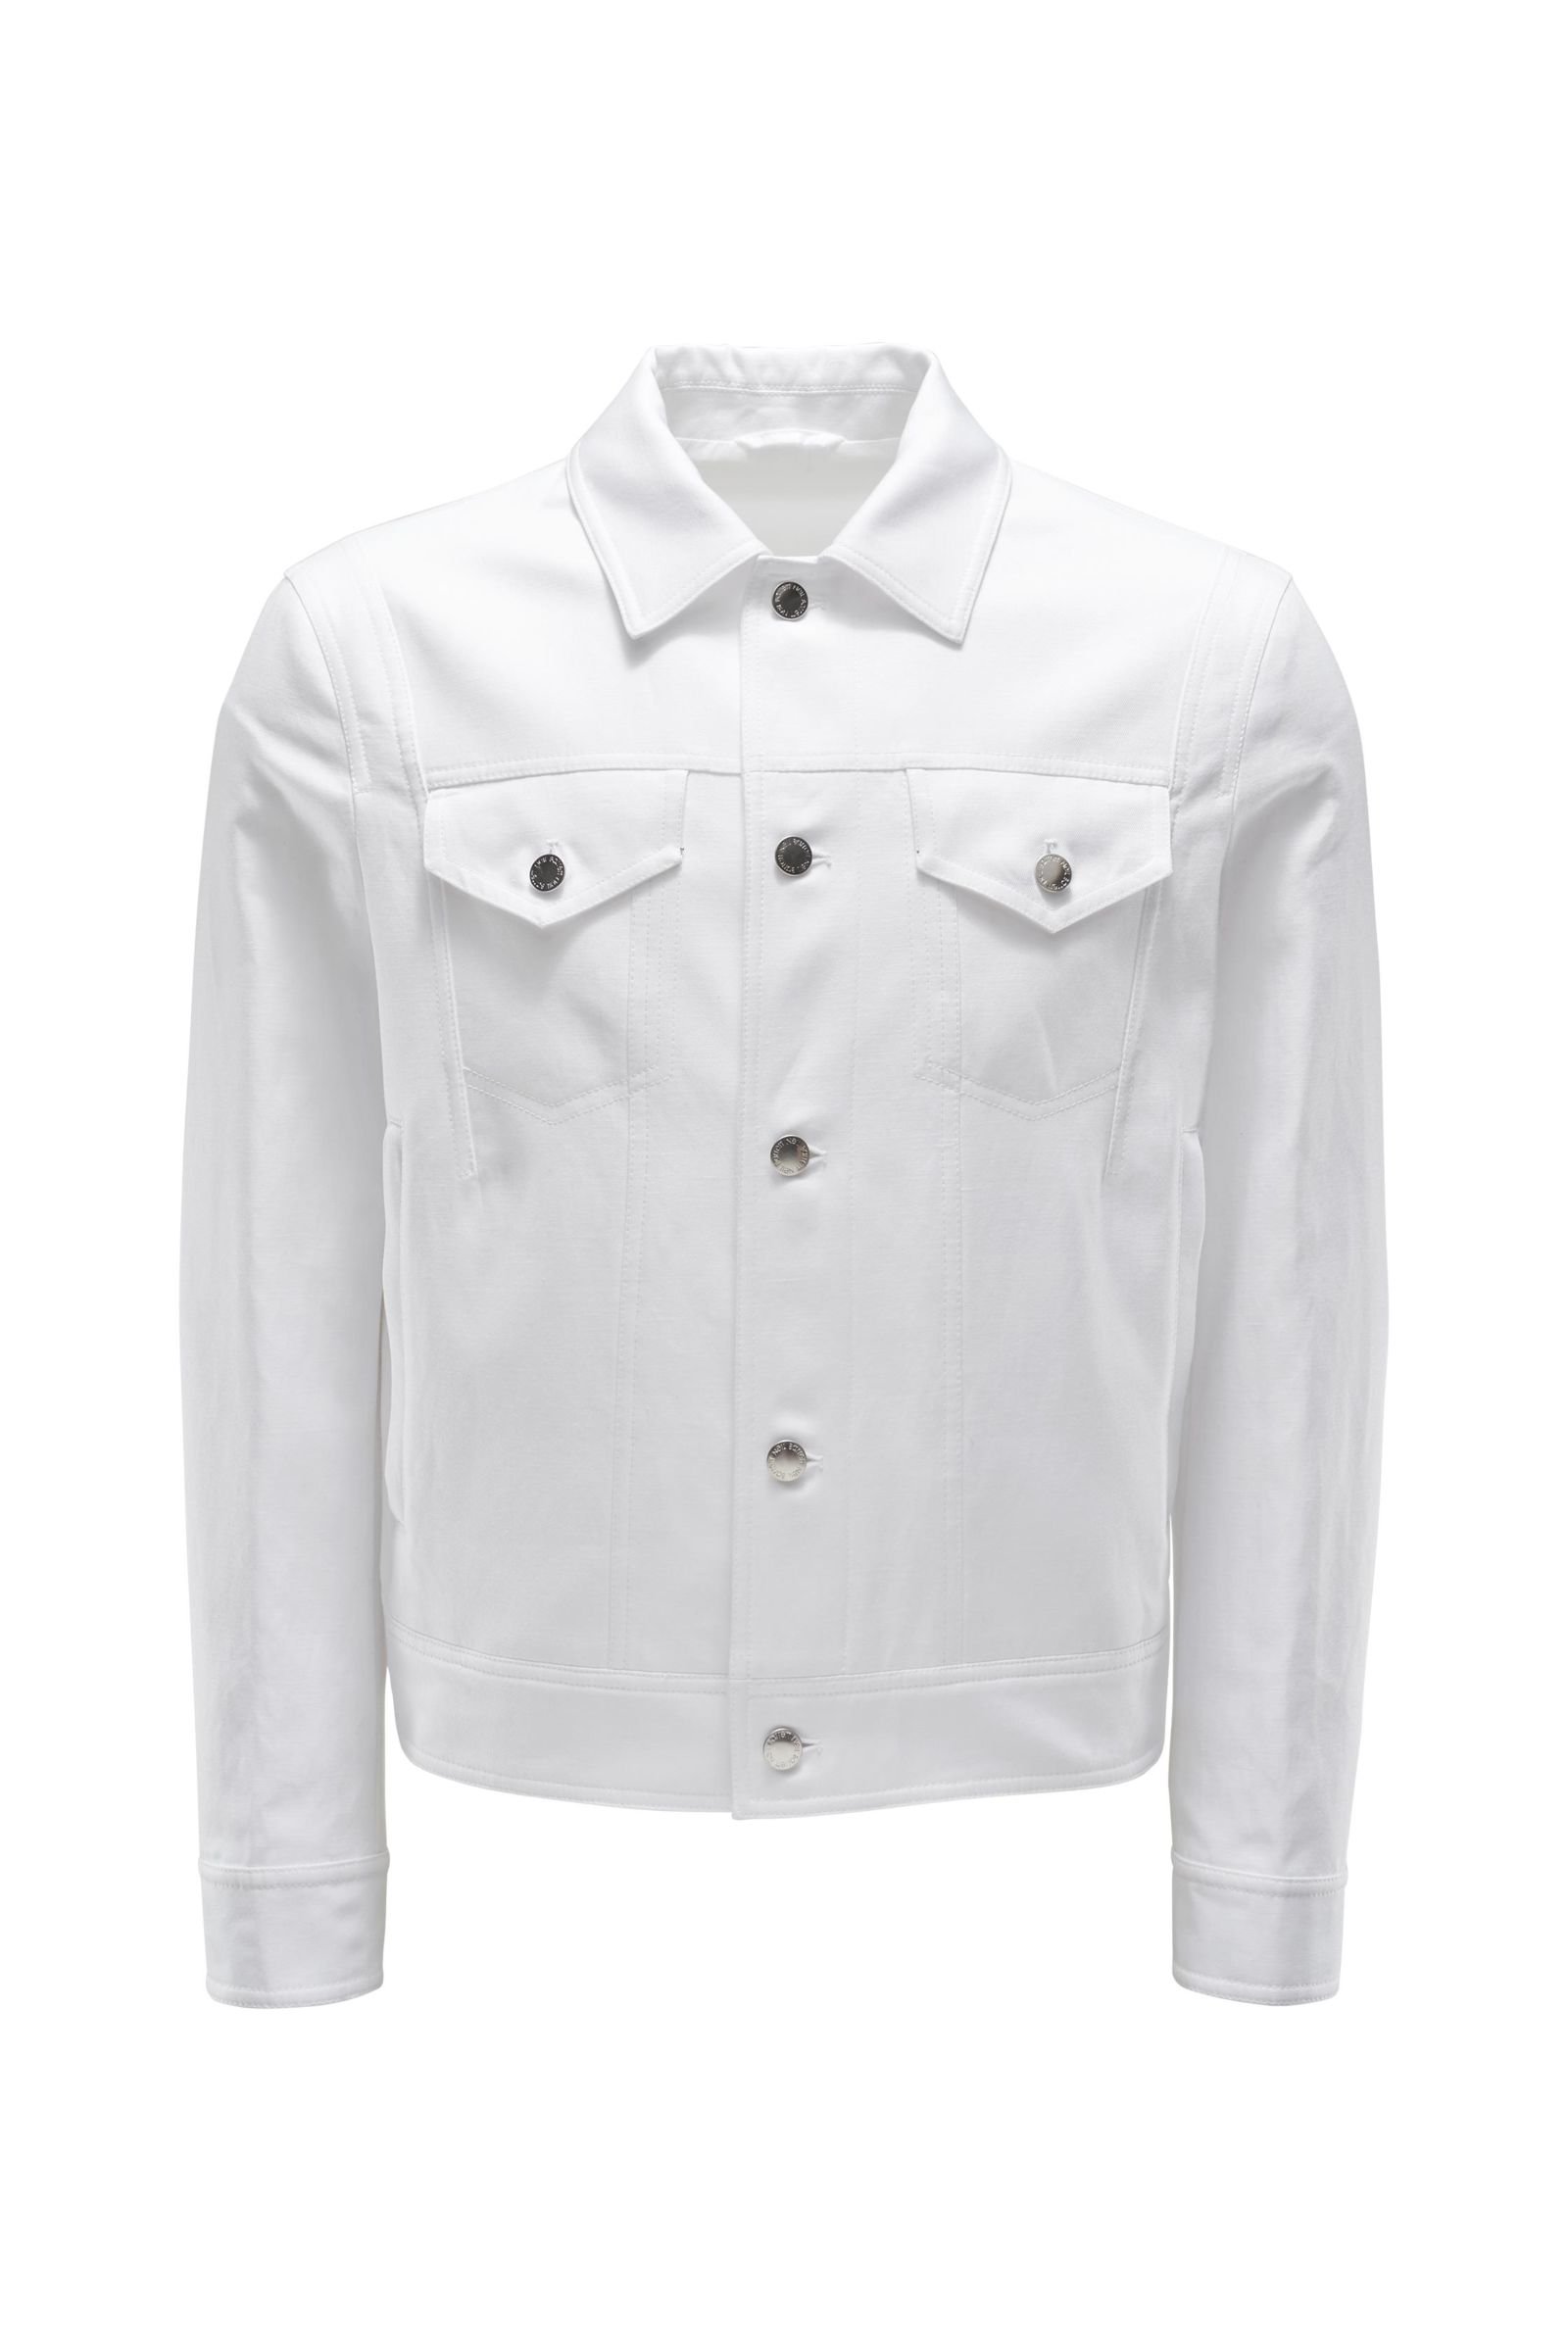 Jacket white